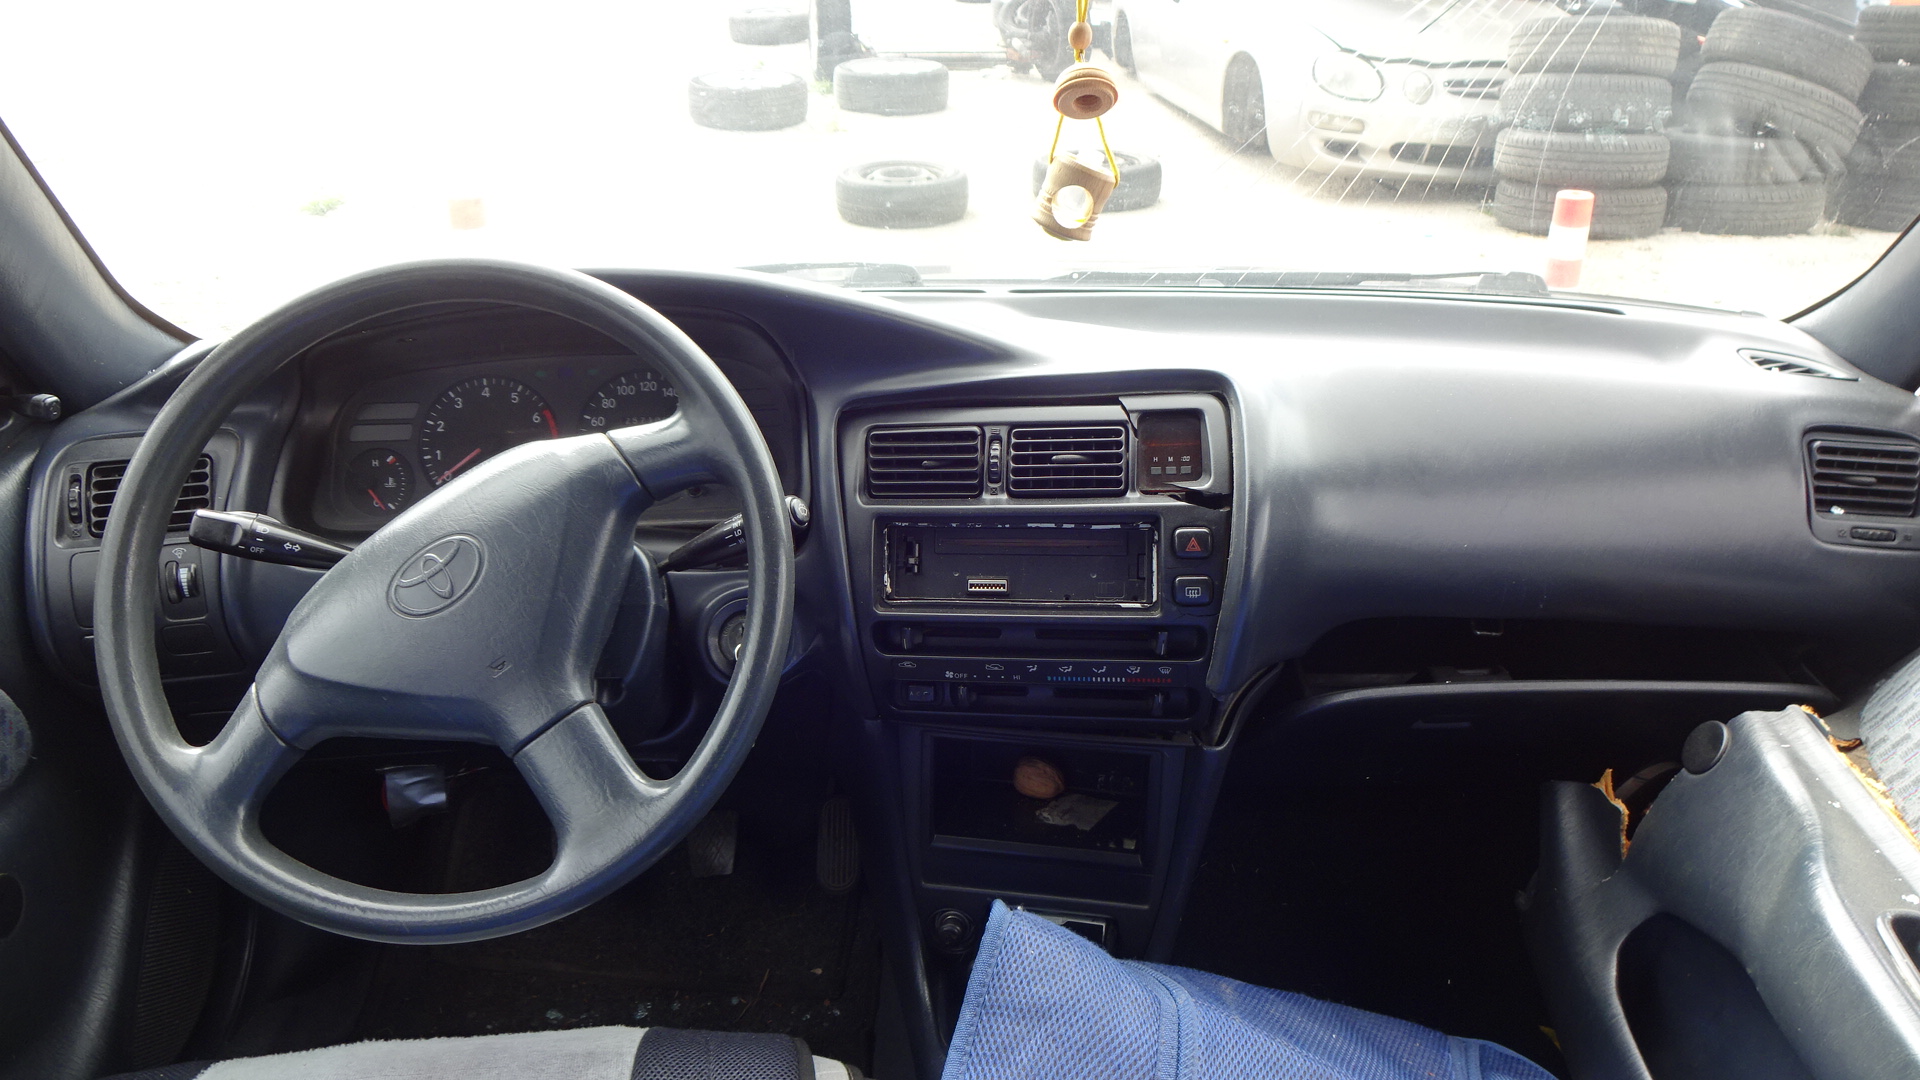 Ακραξόνια Πίσω Toyota Corolla ’97 Προσφορά.